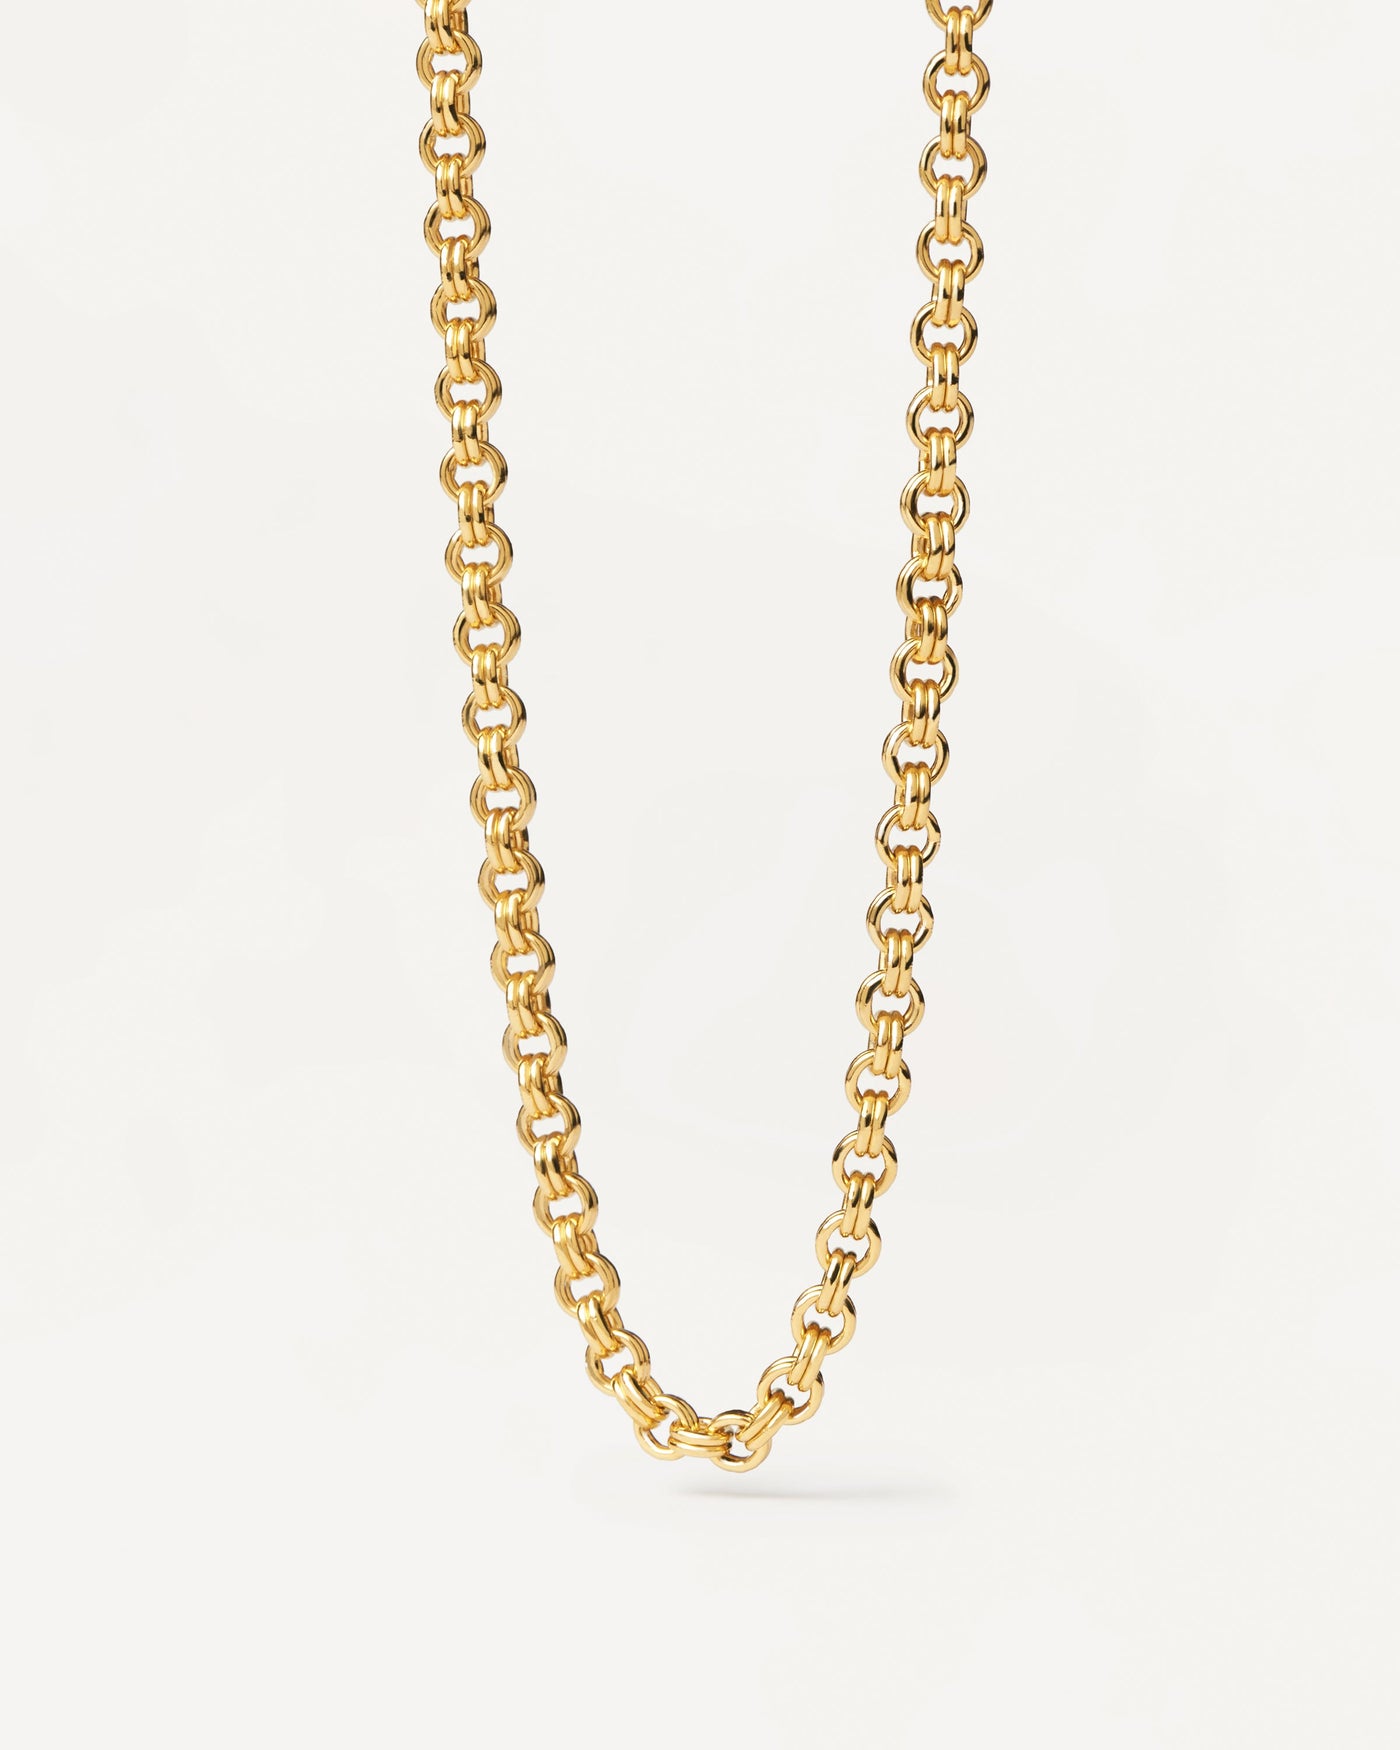 Neo Halskette. Goldverzerrte Silberketten-Halskette mit Doppelkabelgliedern. Erhalten Sie die neuesten Produkte von PDPAOLA. Geben Sie Ihre Bestellung sicher auf und erhalten Sie diesen Bestseller.